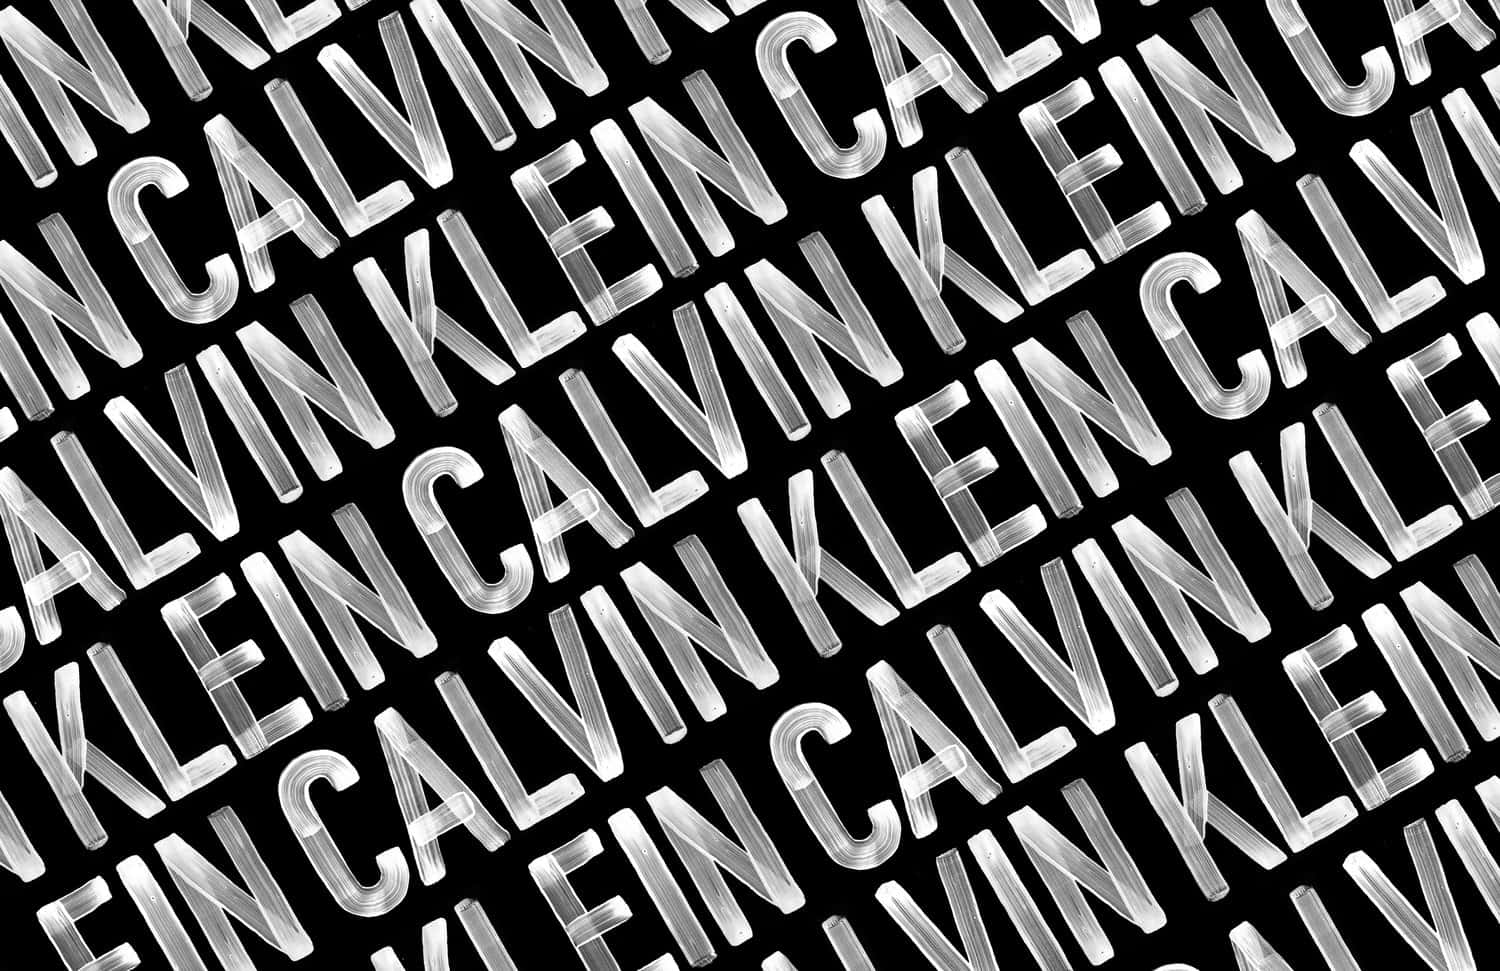 Calvinklein - Calvin Klein - Calvin Klein - Calvin Klein - Calvin Klein - Cal